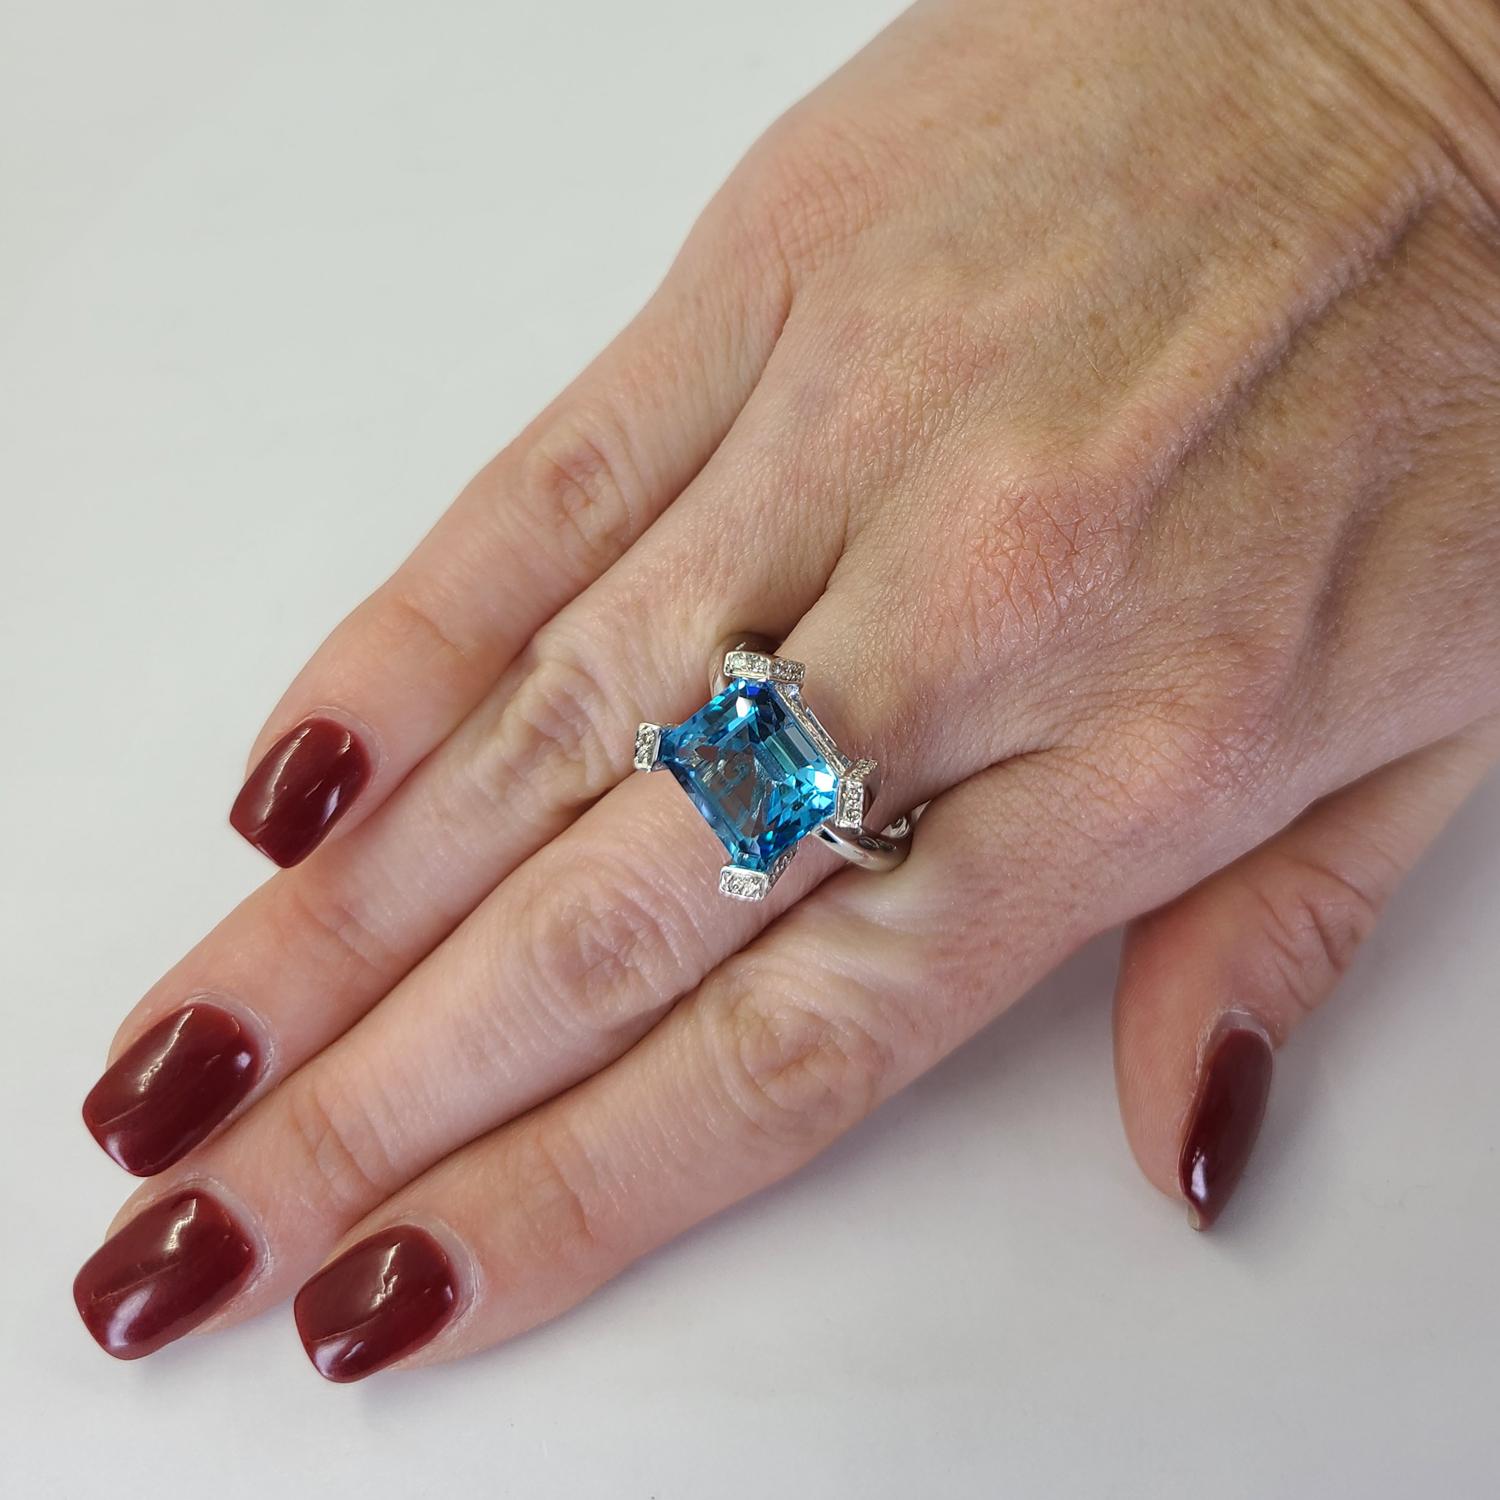 18 Karat Weißgold Ring mit einem Smaragd-Schliff blauen Topas mit einem Gewicht von ca. 5 Karat akzentuiert durch 58 runde Diamanten von VS Clarity & H Farbe insgesamt 0,58 Karat. Fingergröße 8,5. Das fertige Gewicht beträgt 8,6 Gramm.